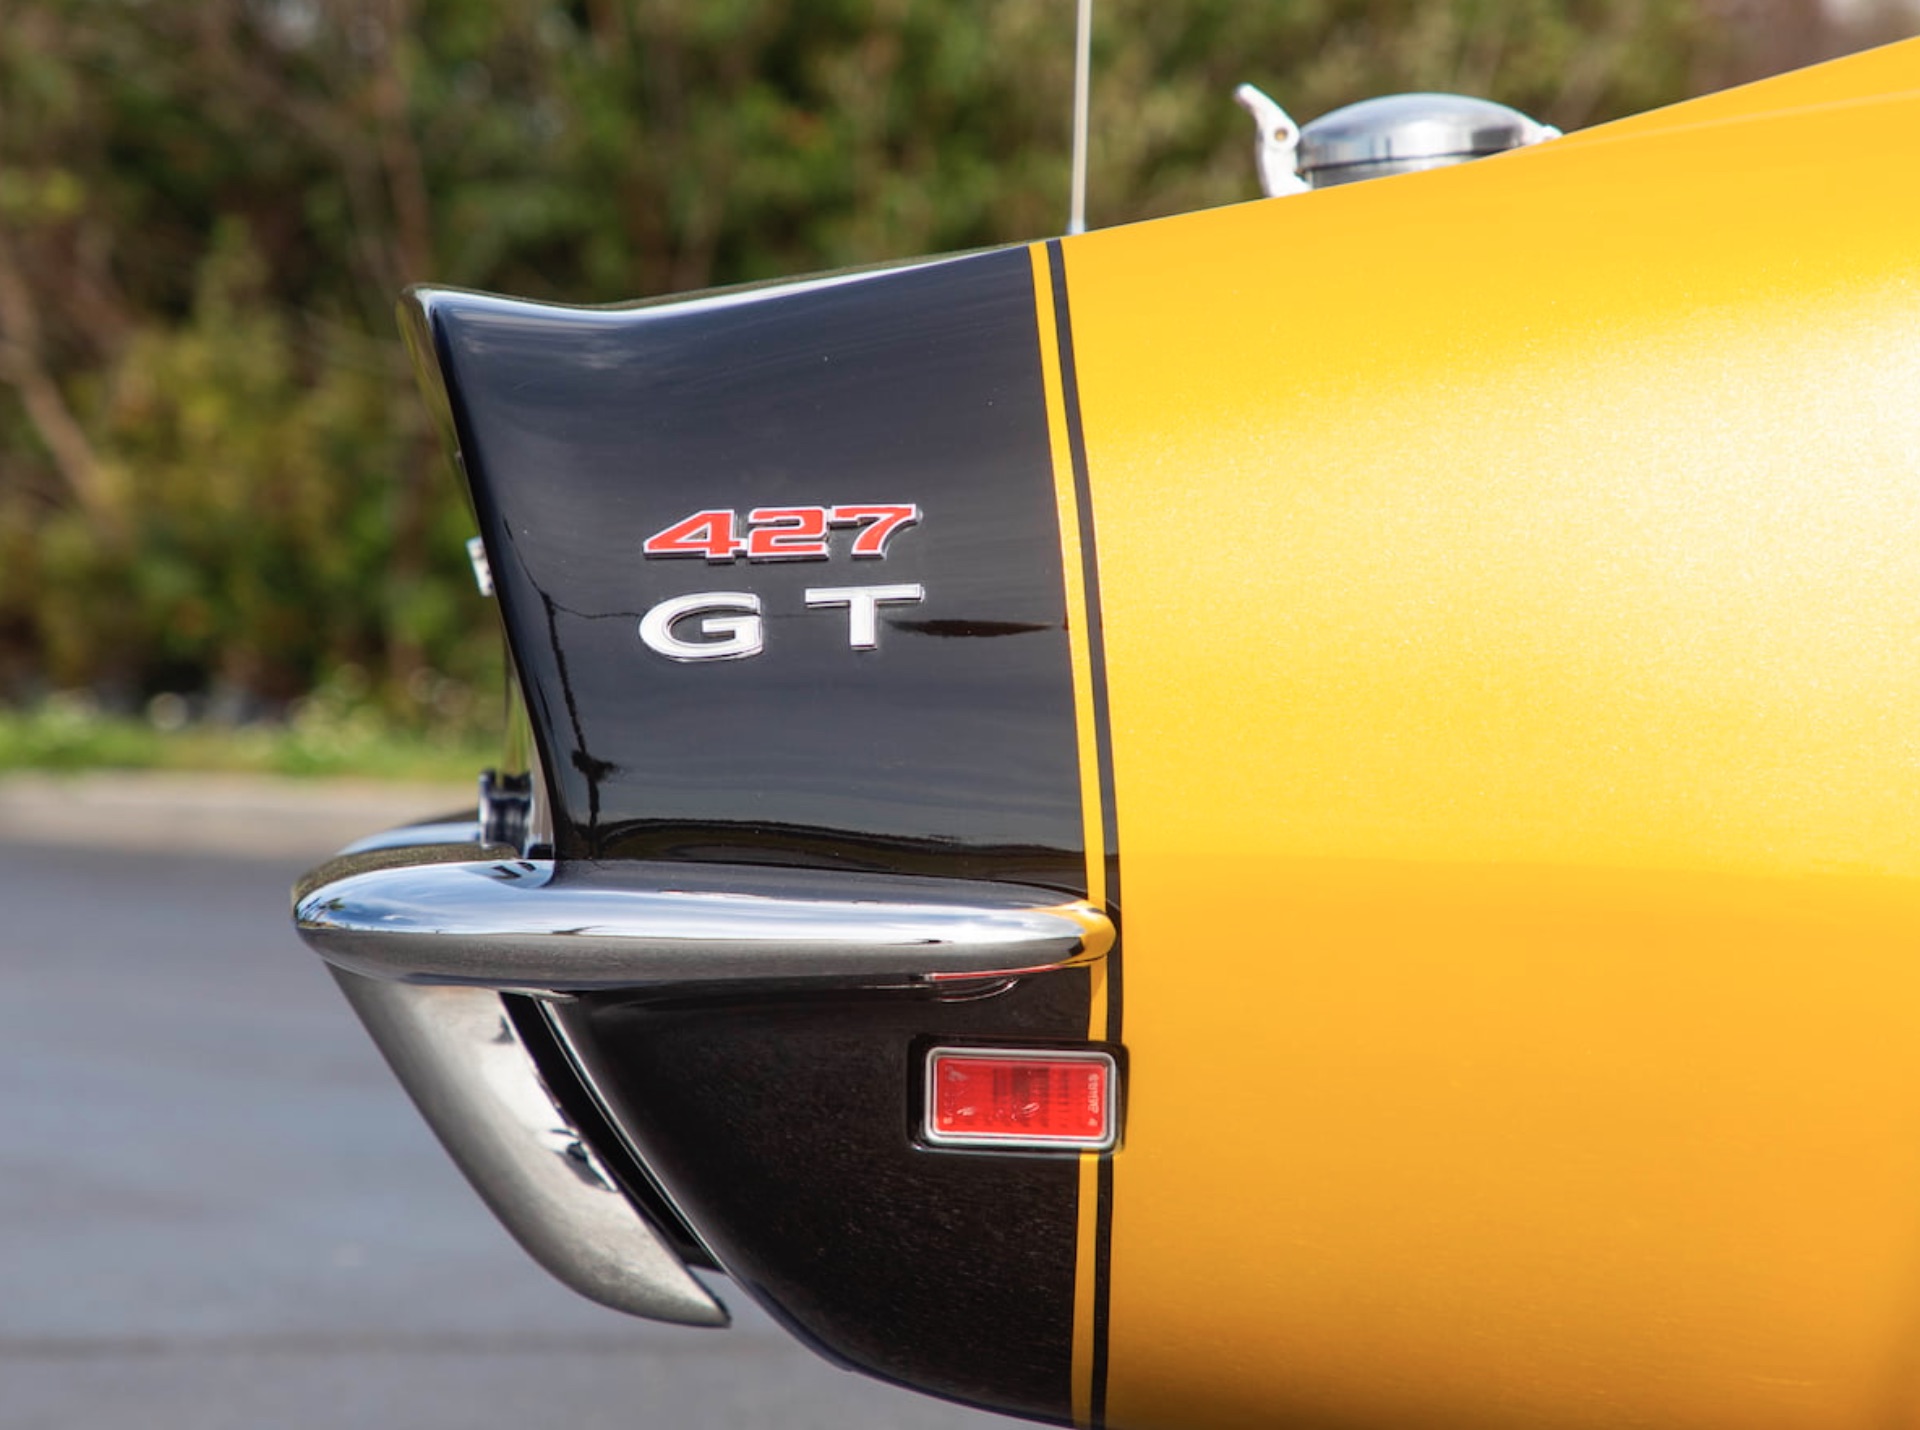 Money No Object: 1969 Baldwin-Motion Phase III GT Corvette